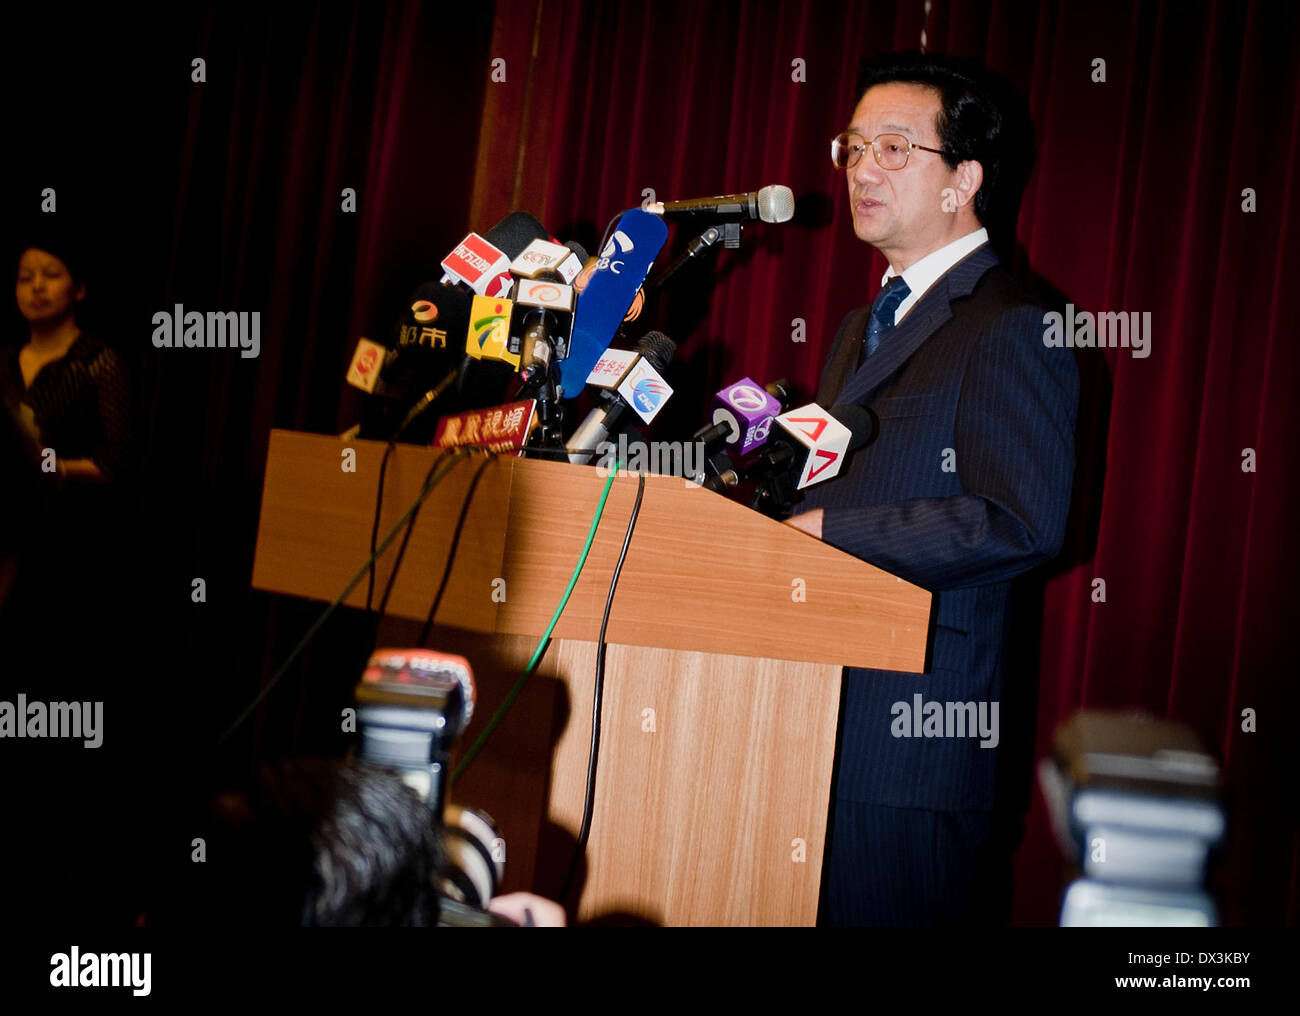 Kuala Lumpur, Kuala Lumpur. 18 Mar, 2014. Embajador chino en Malasia Huang Huikang aborda la conferencia de prensa celebrada en la embajada de China en Malasia, Kuala Lumpur, el 18 de marzo de 2014. Ningún pasajero procedente de China continental a bordo del vuelo MH370 desaparecidos pudieran estar involucrados en el secuestro o ataque terrorista, embajador chino en Malasia dijo el martes. Comprobación de antecedentes sobre todos los pasajeros procedentes de China continental no ha encontrado pruebas que respalden esa sospecha, Huang Huikang dice. Crédito: Él Jingjia/Xinhua/Alamy Live News Foto de stock